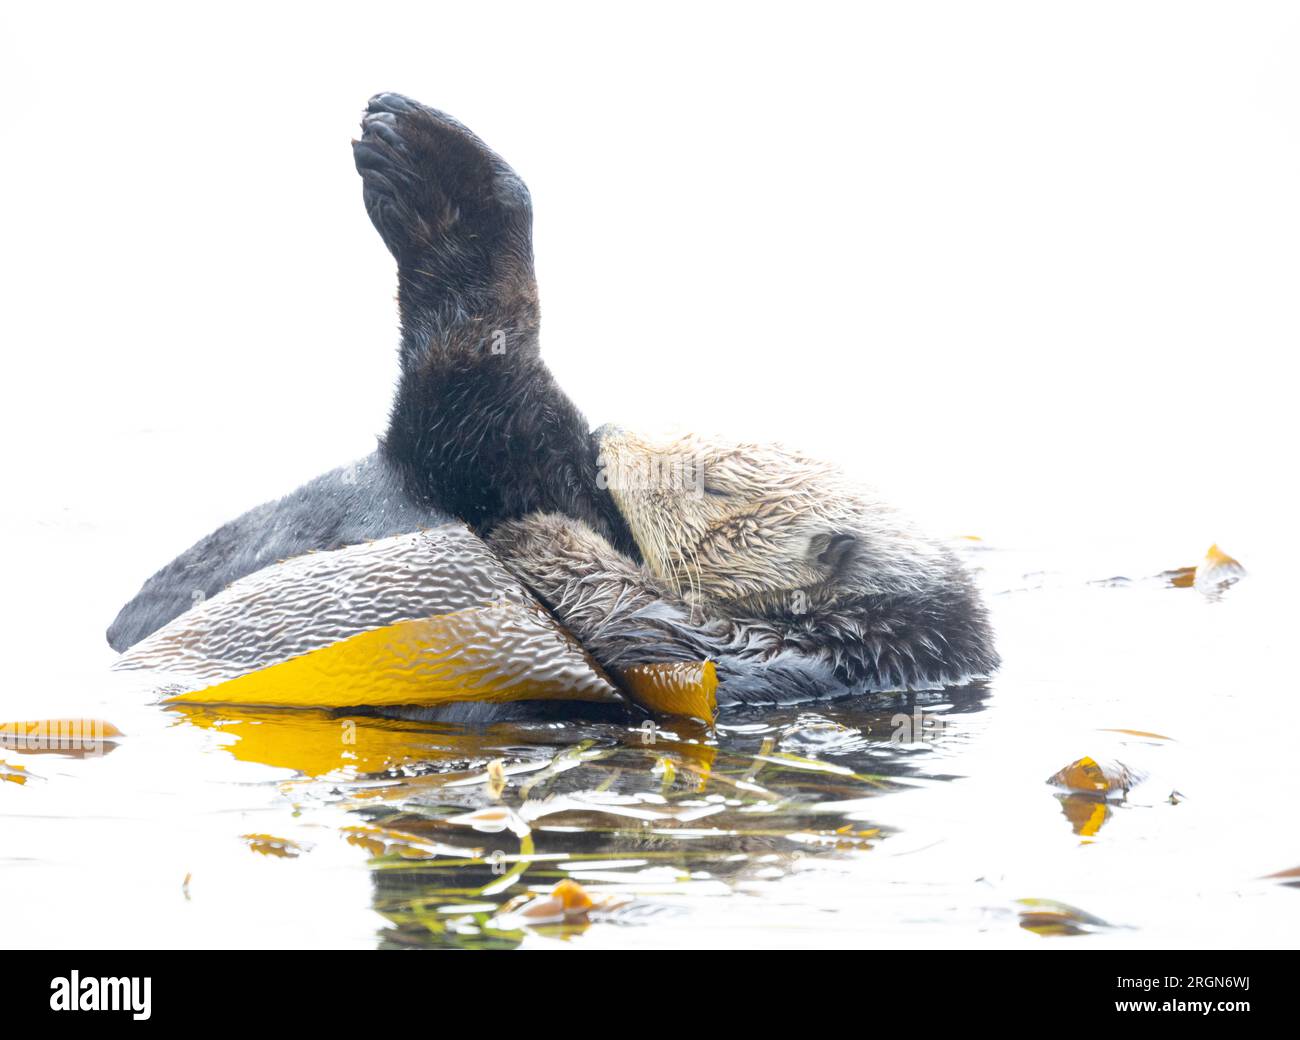 Sea Otter Grooming Hind leg Raised Stock Photo - Alamy